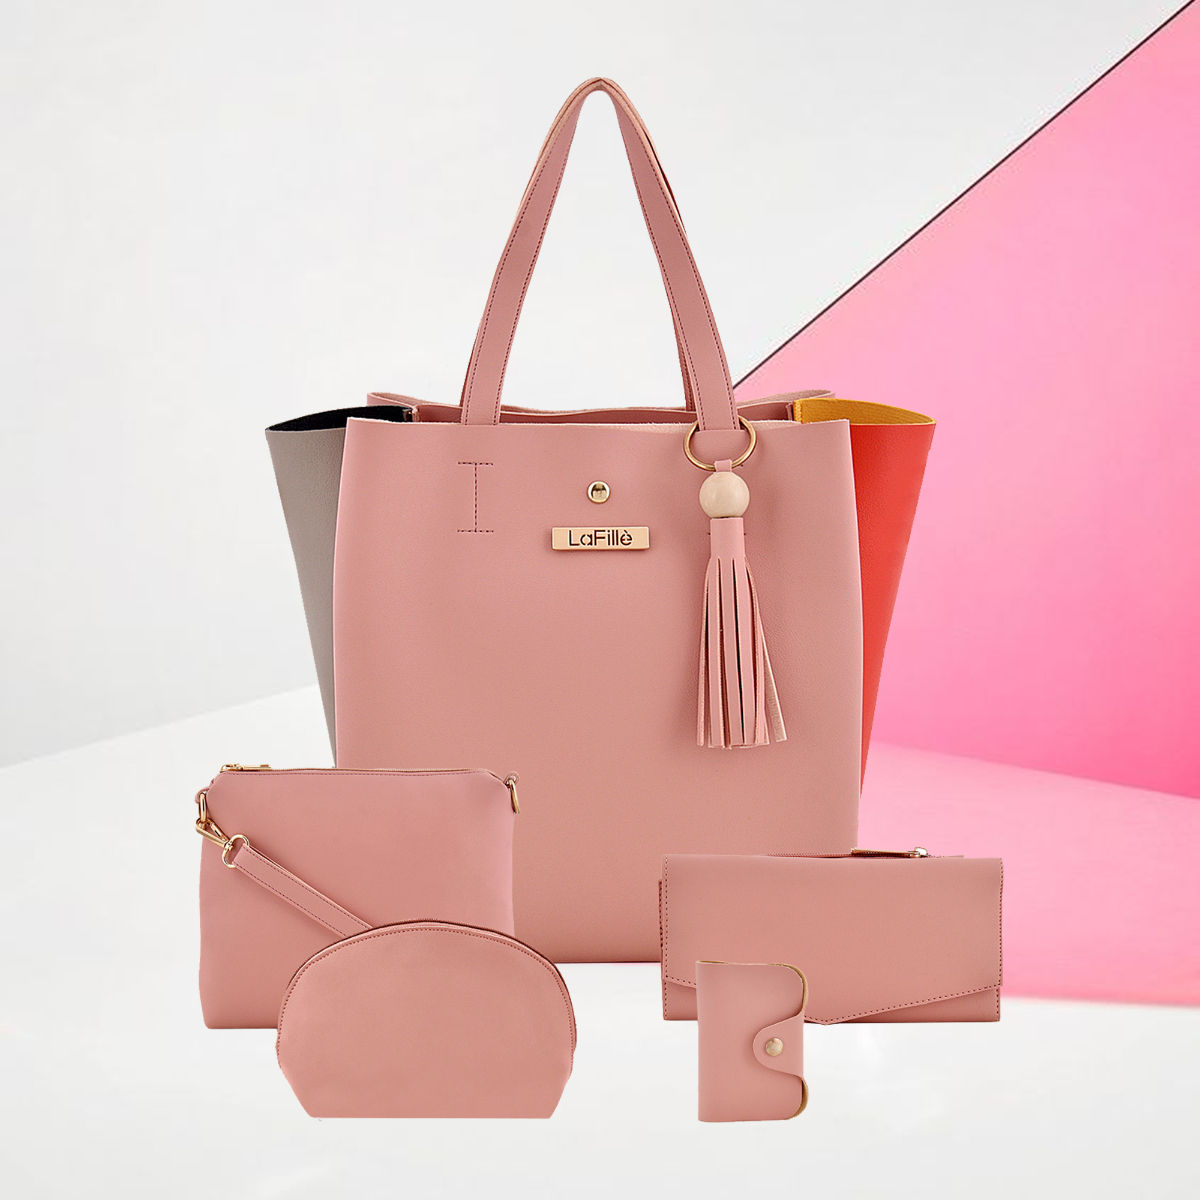 Buy VISHESH COLLECTIONS Women Pink Handbag Pink Online @ Best Price in  India | Flipkart.com